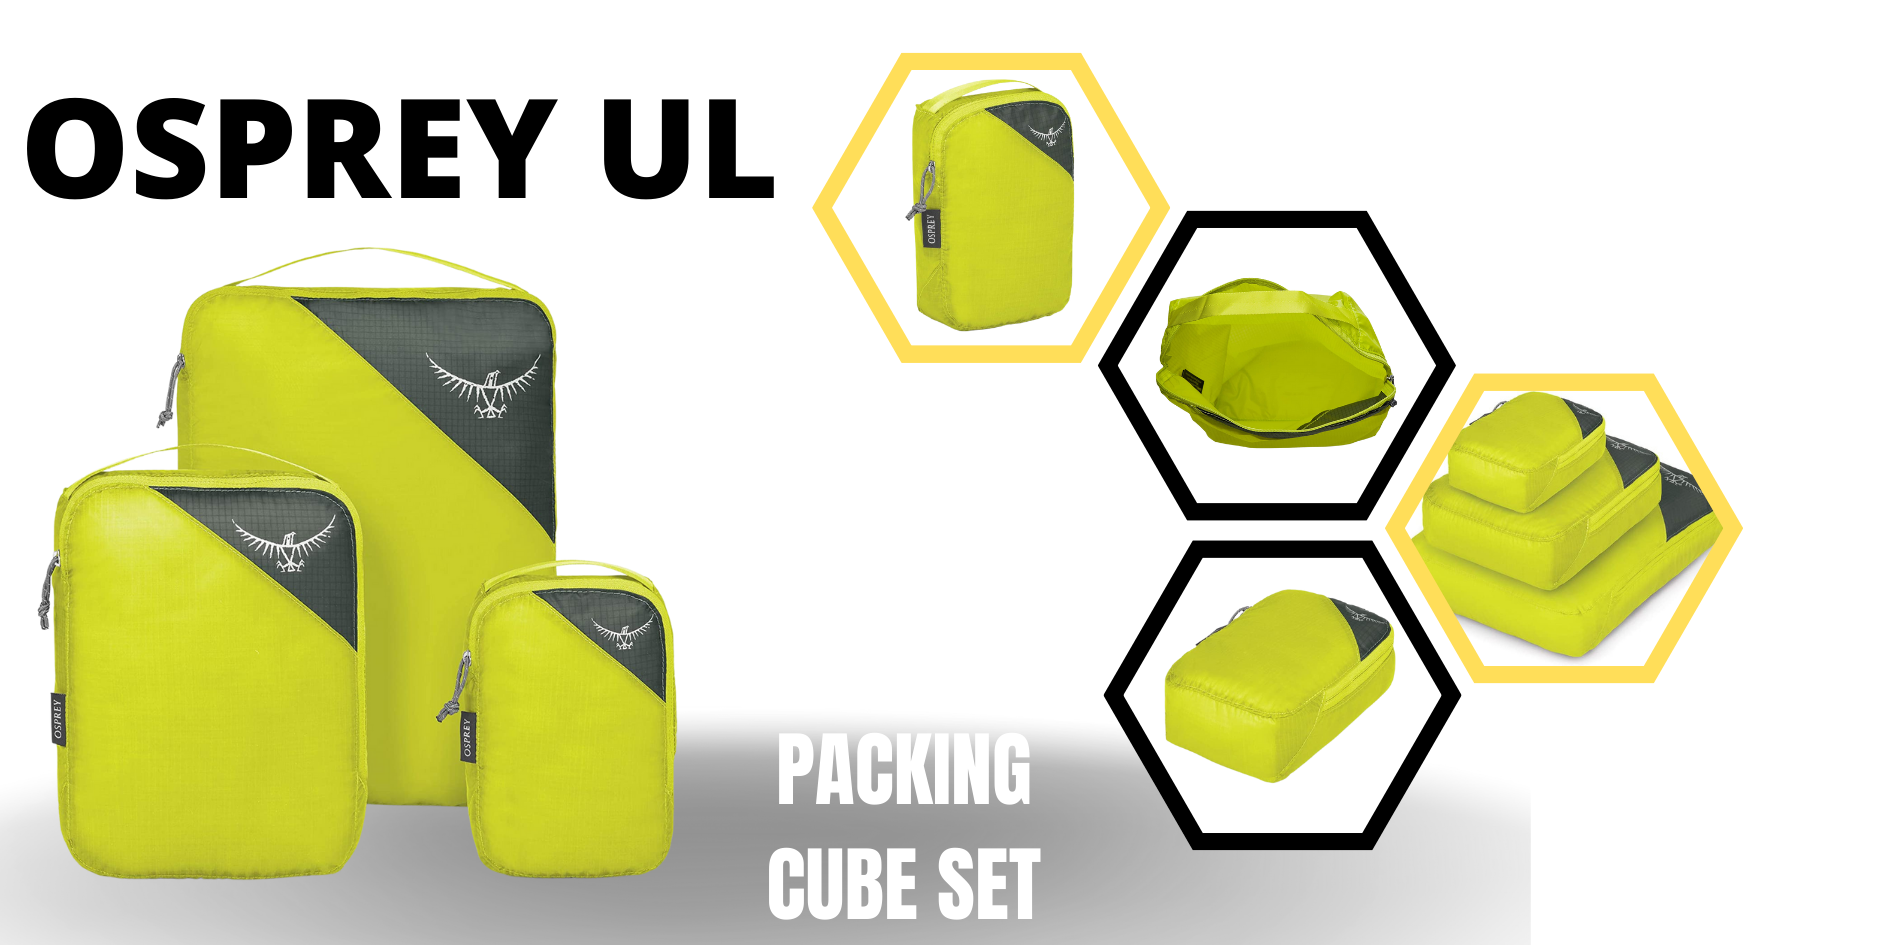 Osprey UL Packing Cube Set